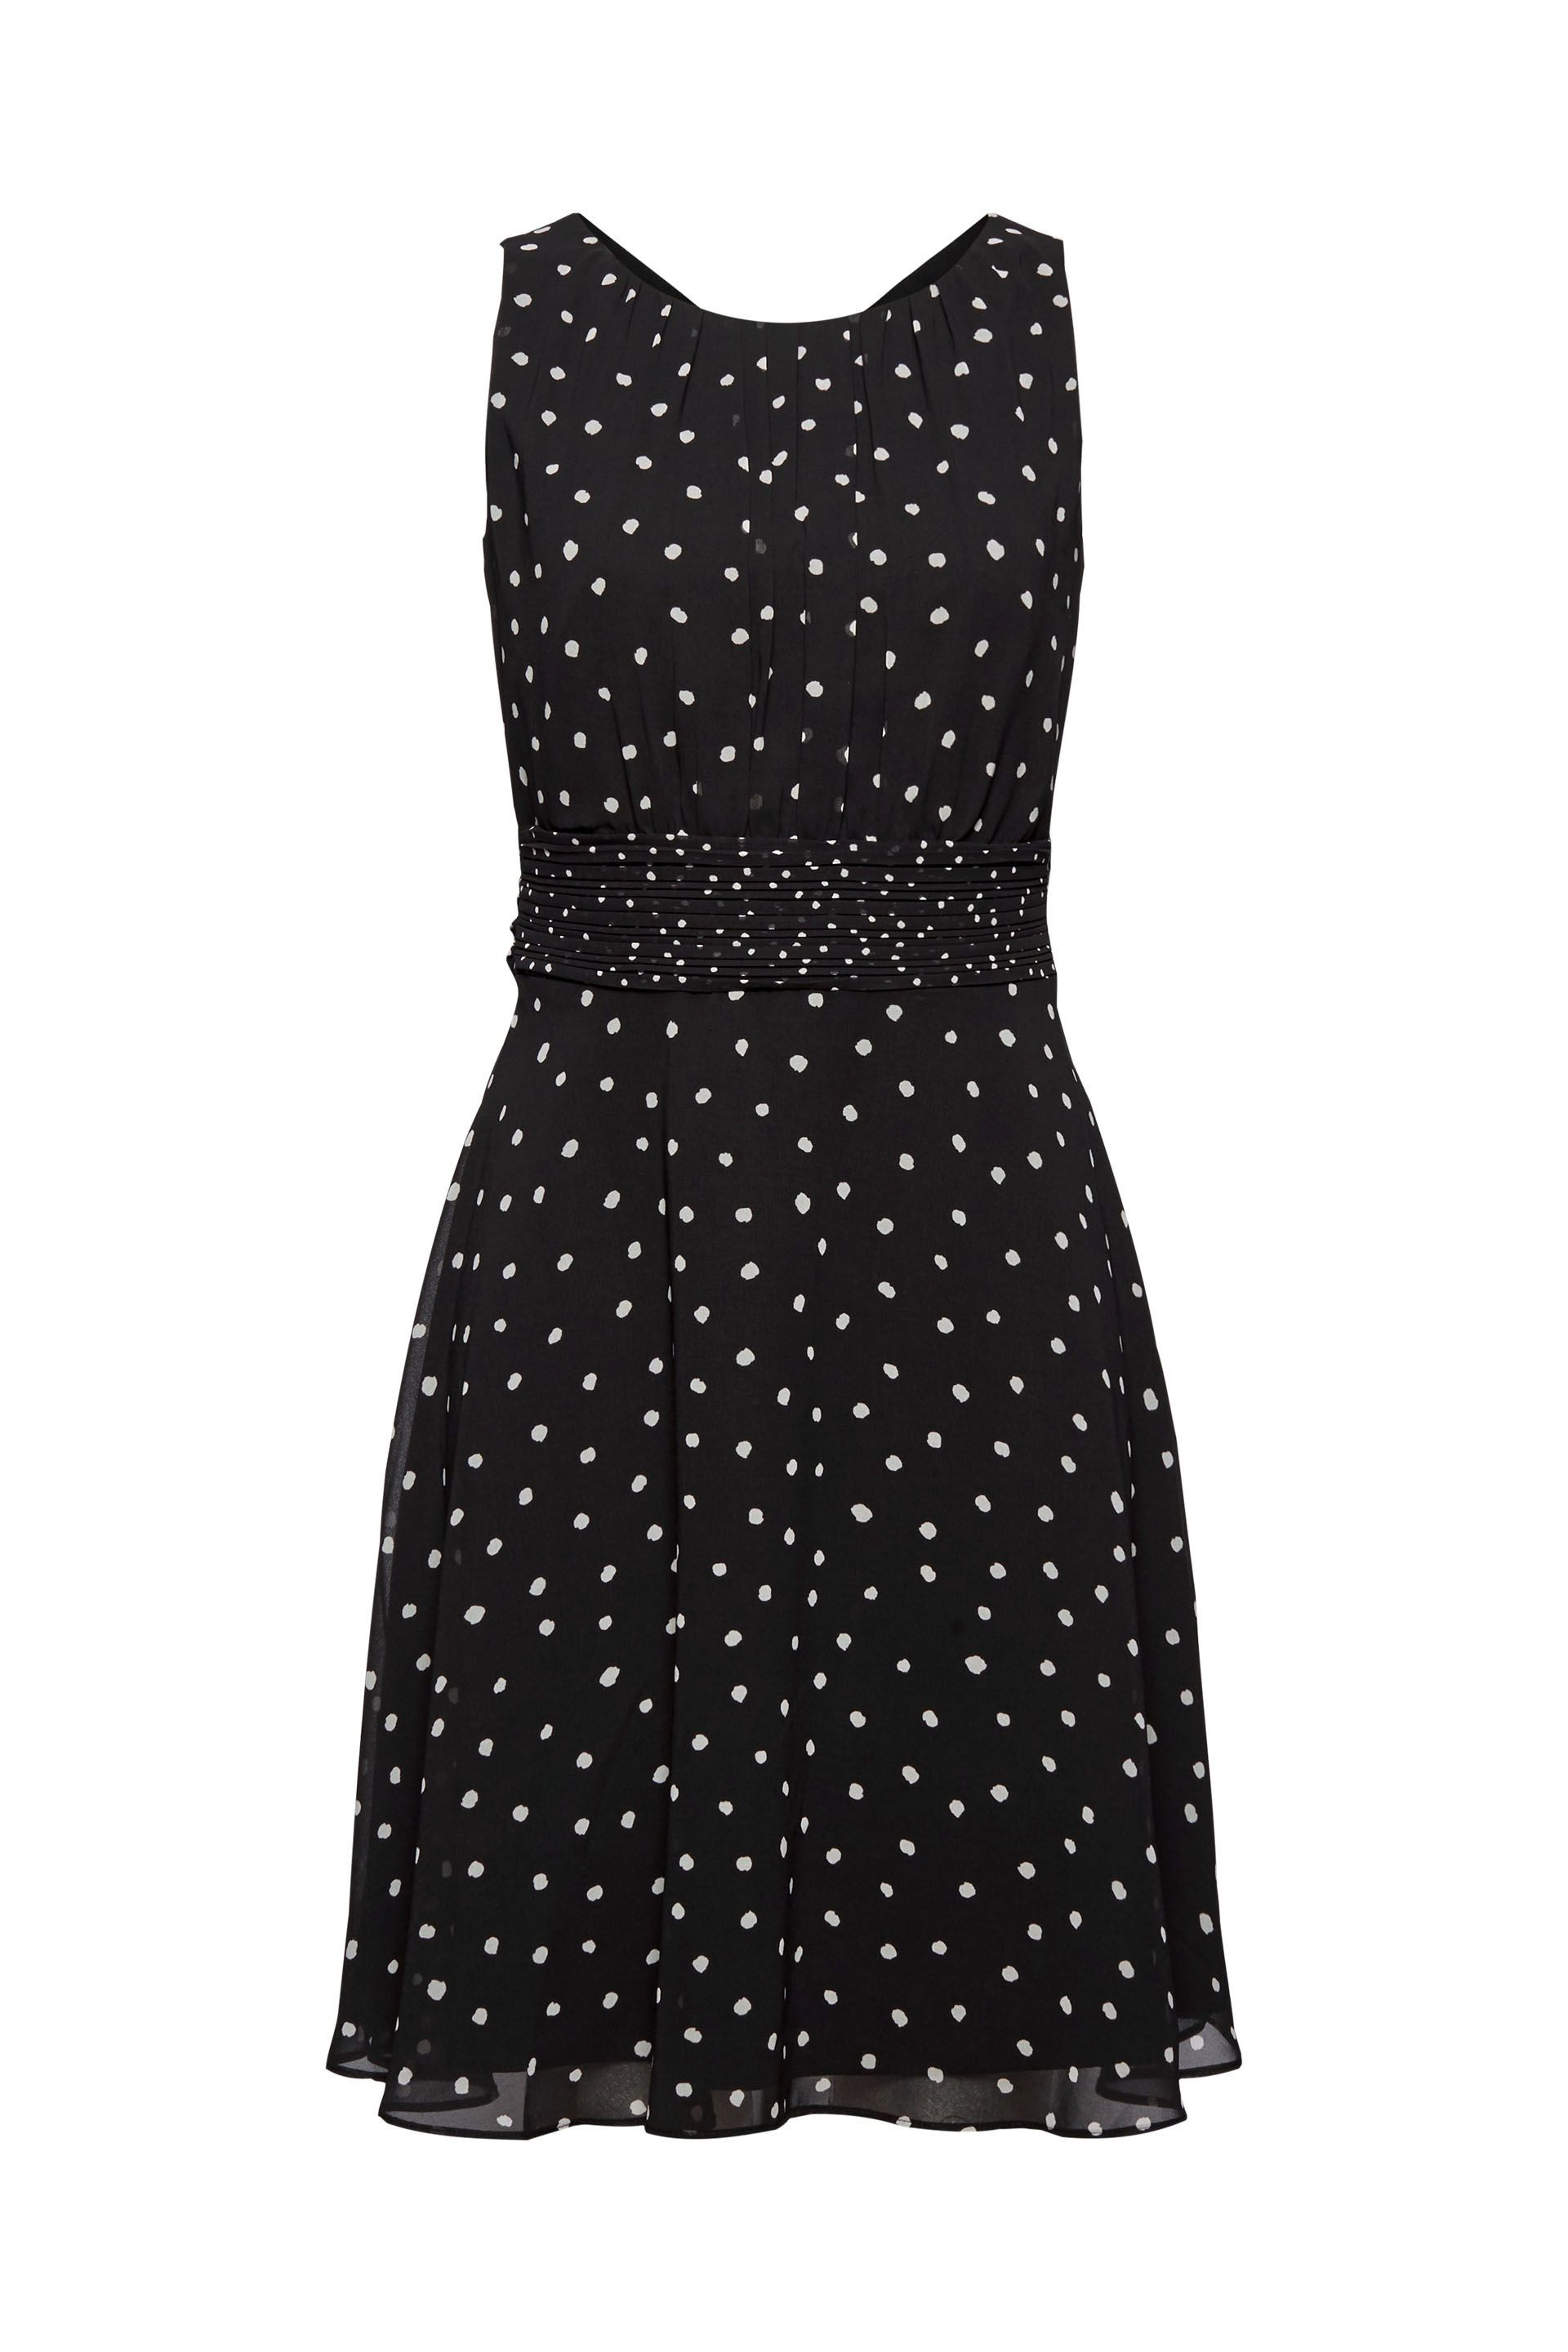 Esprit - Polka dot dress, Black, large image number 0